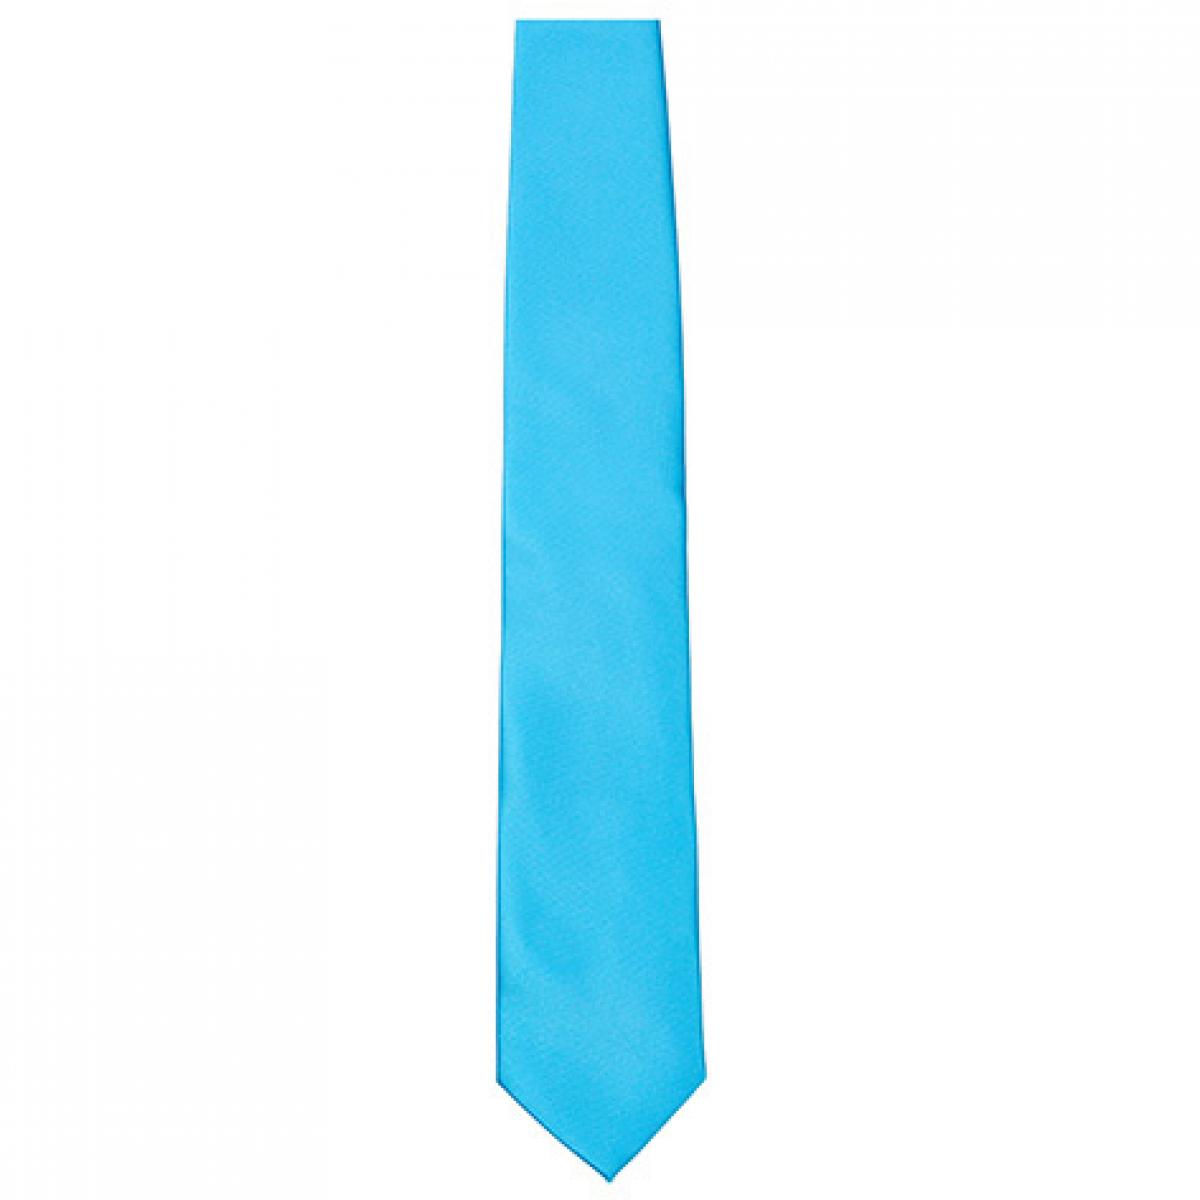 Hersteller: TYTO Herstellernummer: TT901 Artikelbezeichnung: Satin Tie / 144 x 8,5cm /  Zu 100% von Hand genäht Farbe: Turquoise